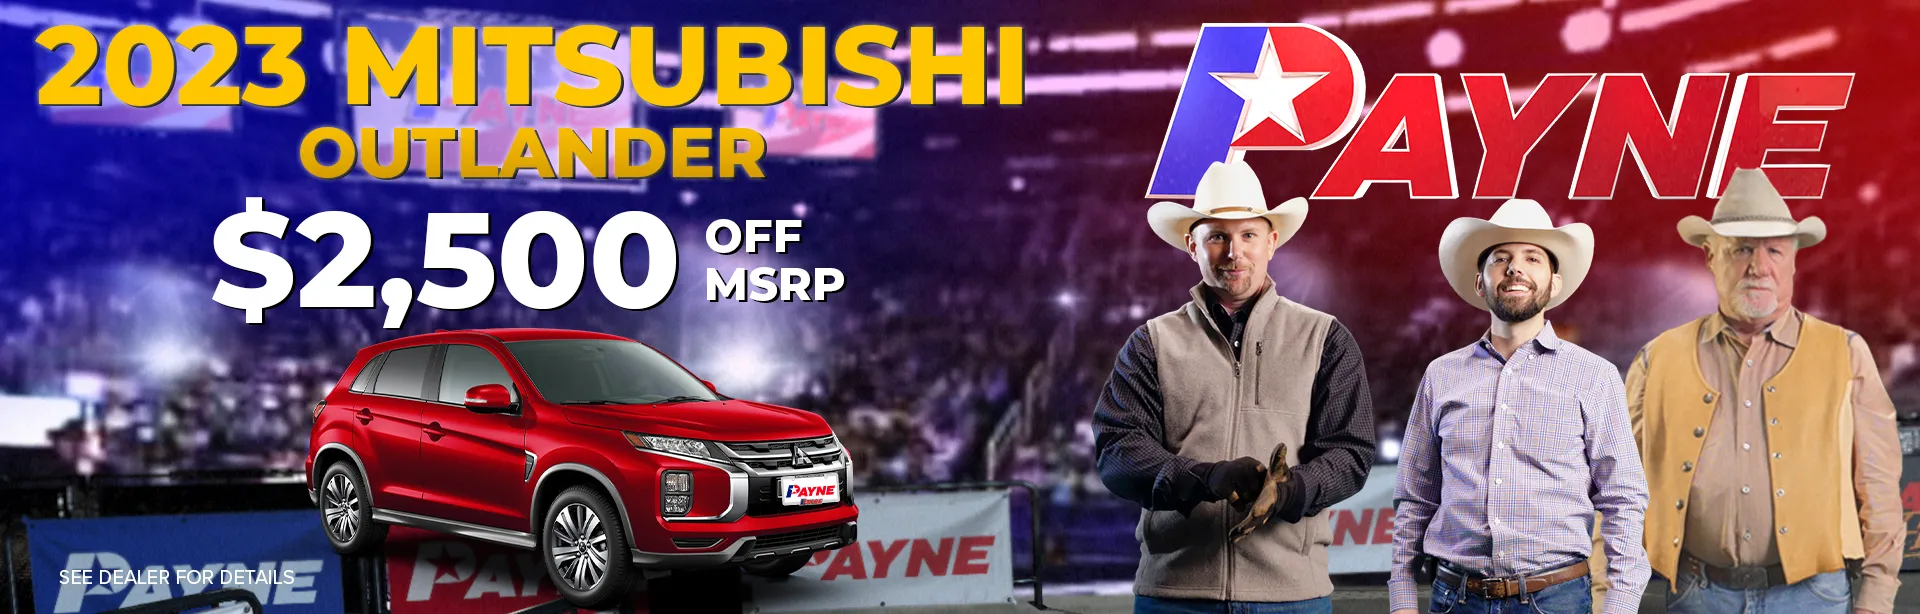 Get $2,500 off MSRP on a 2023 Mitsubishi Outlander